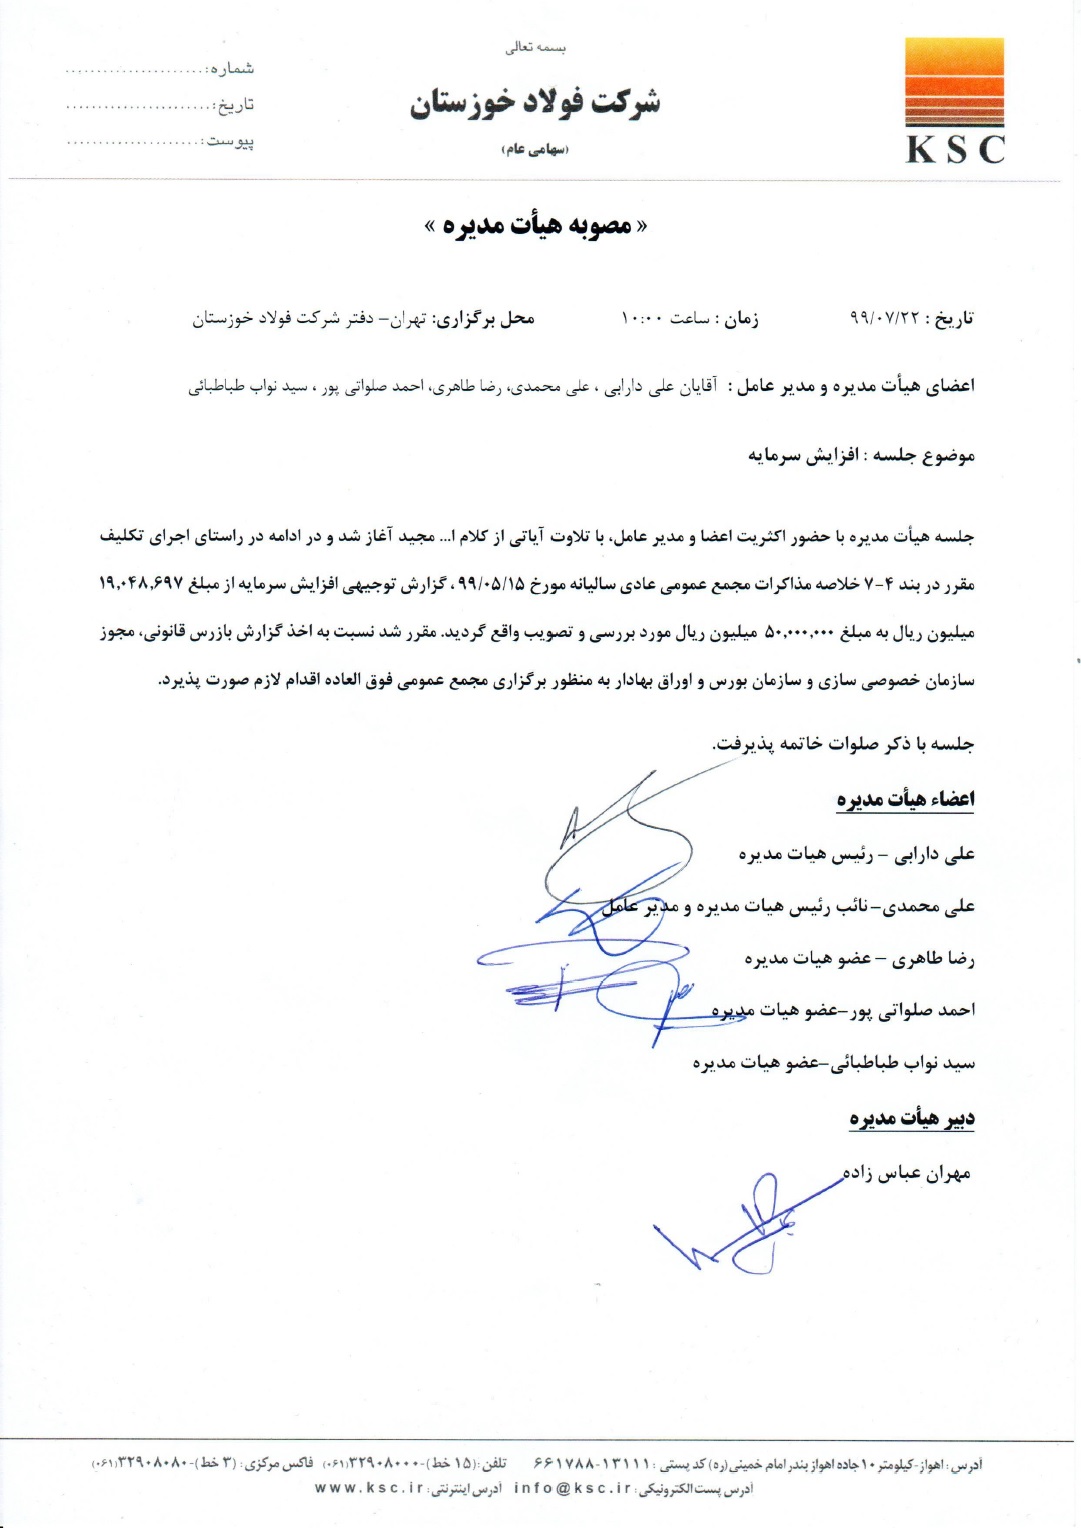 پیشنهاد هیئت مدیره فولاد خوزستان به سهامداران مبنی بر افزایش ۱۶۲ درصدی سرمایه